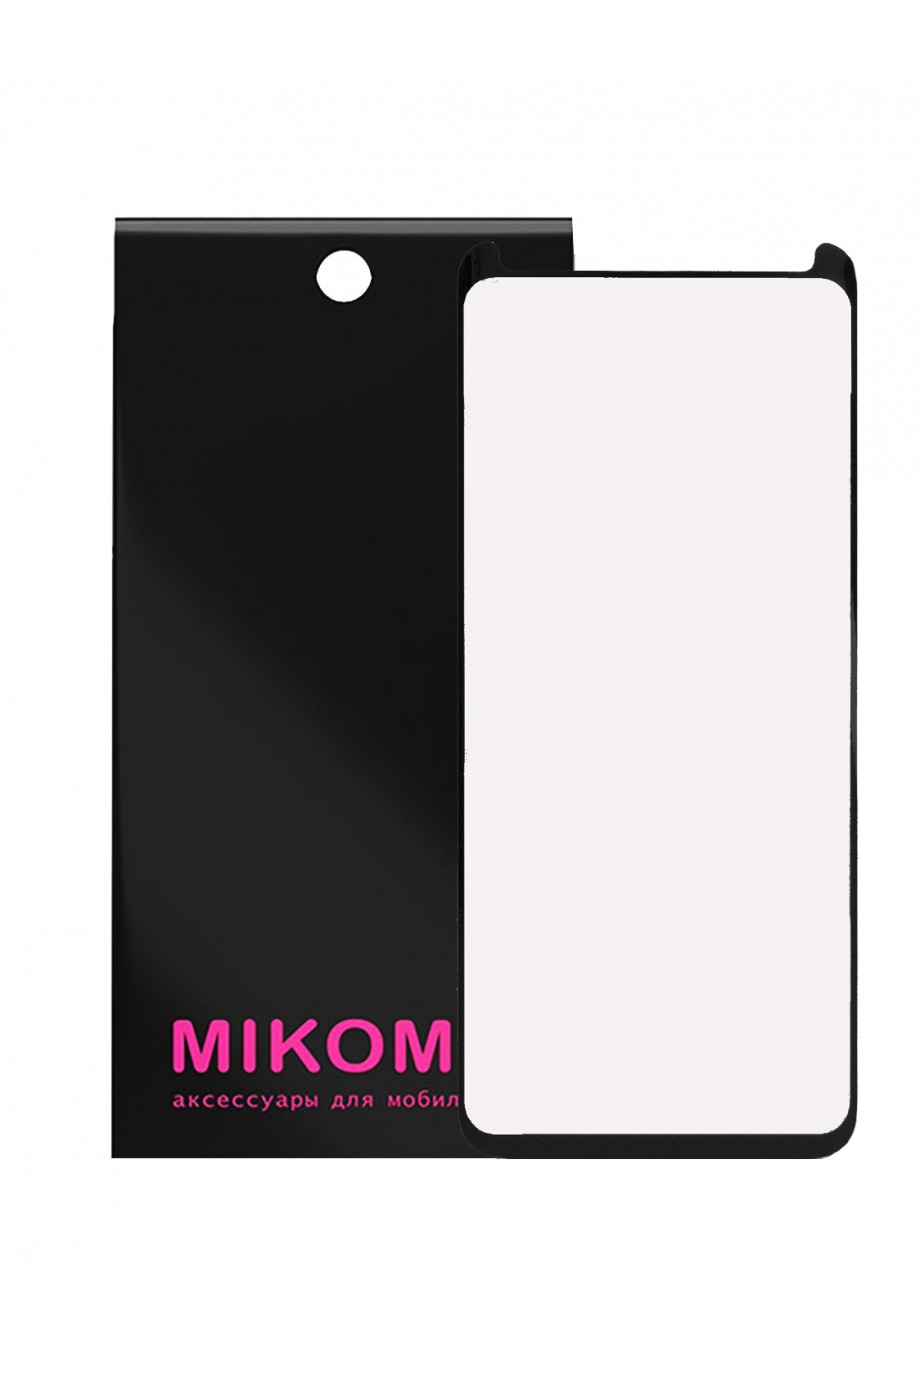 Защитное стекло 3D Mikomo для Samsung Galaxy S8, черная рамка, полный клей